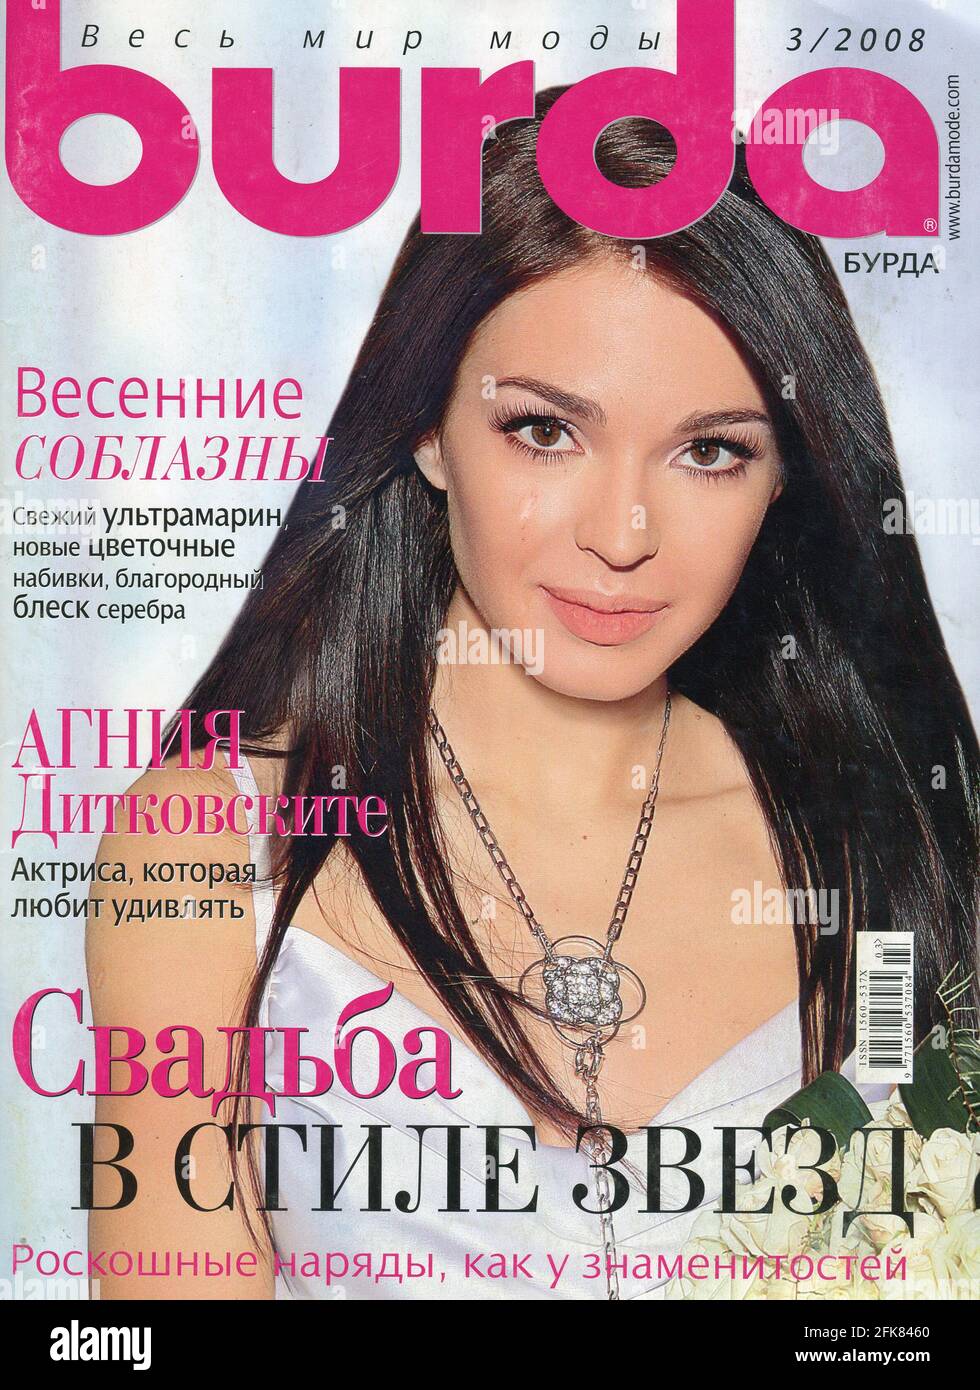 Copertina della rivista russa "Burda" 3/2008. Foto Stock